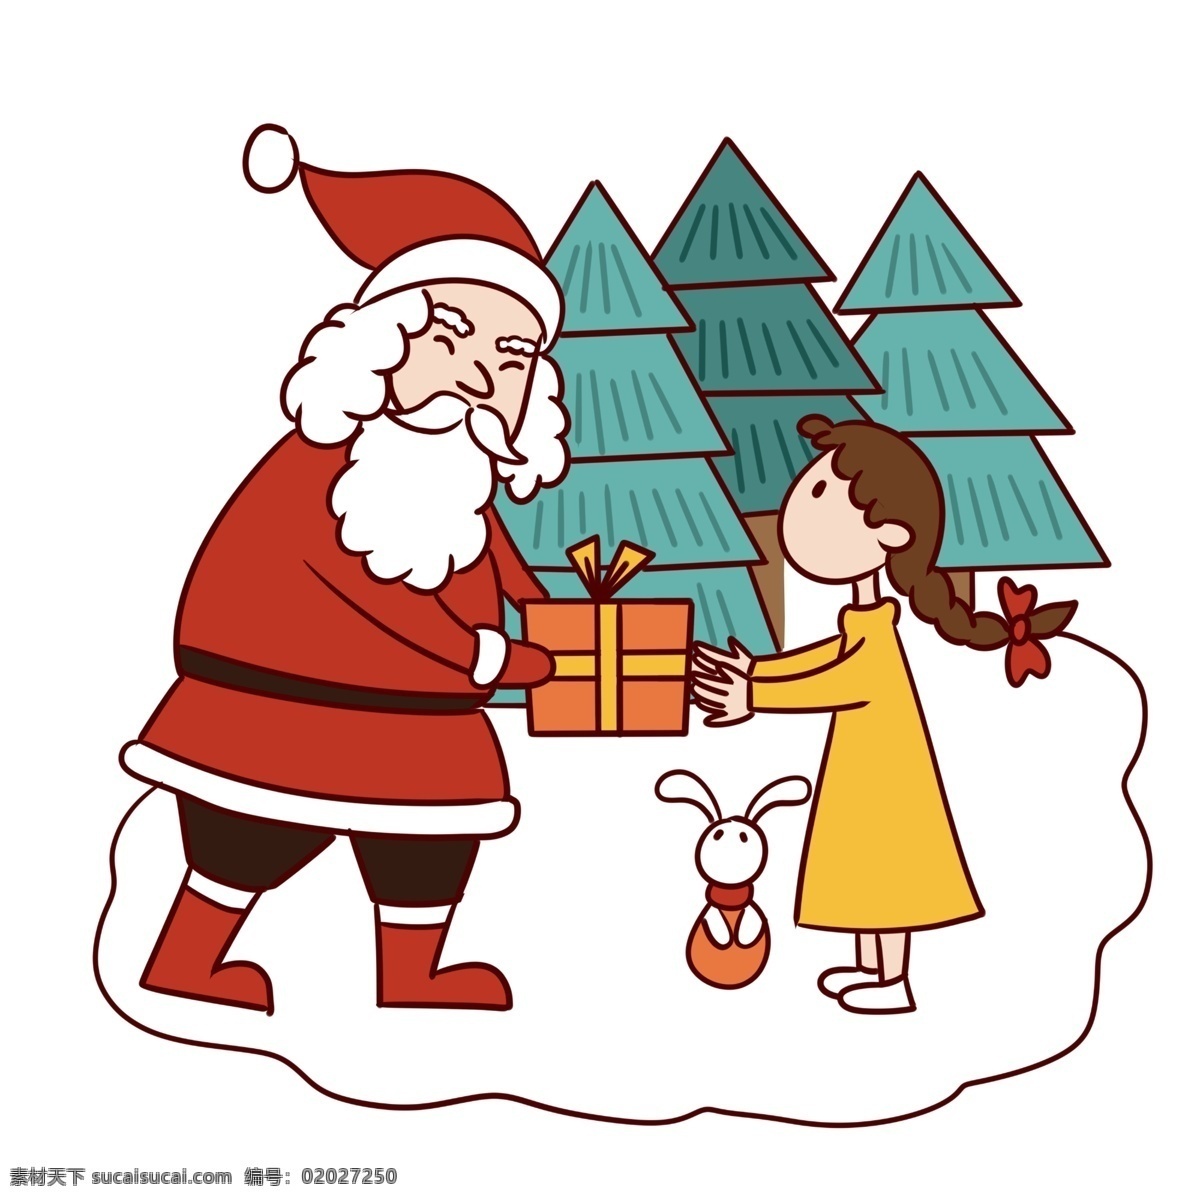 手绘 卡通 可爱 圣诞节 圣诞老人 小女孩 矢量 免抠 圣诞快乐 礼物 圣诞树 圣诞礼物 小白兔 雪地